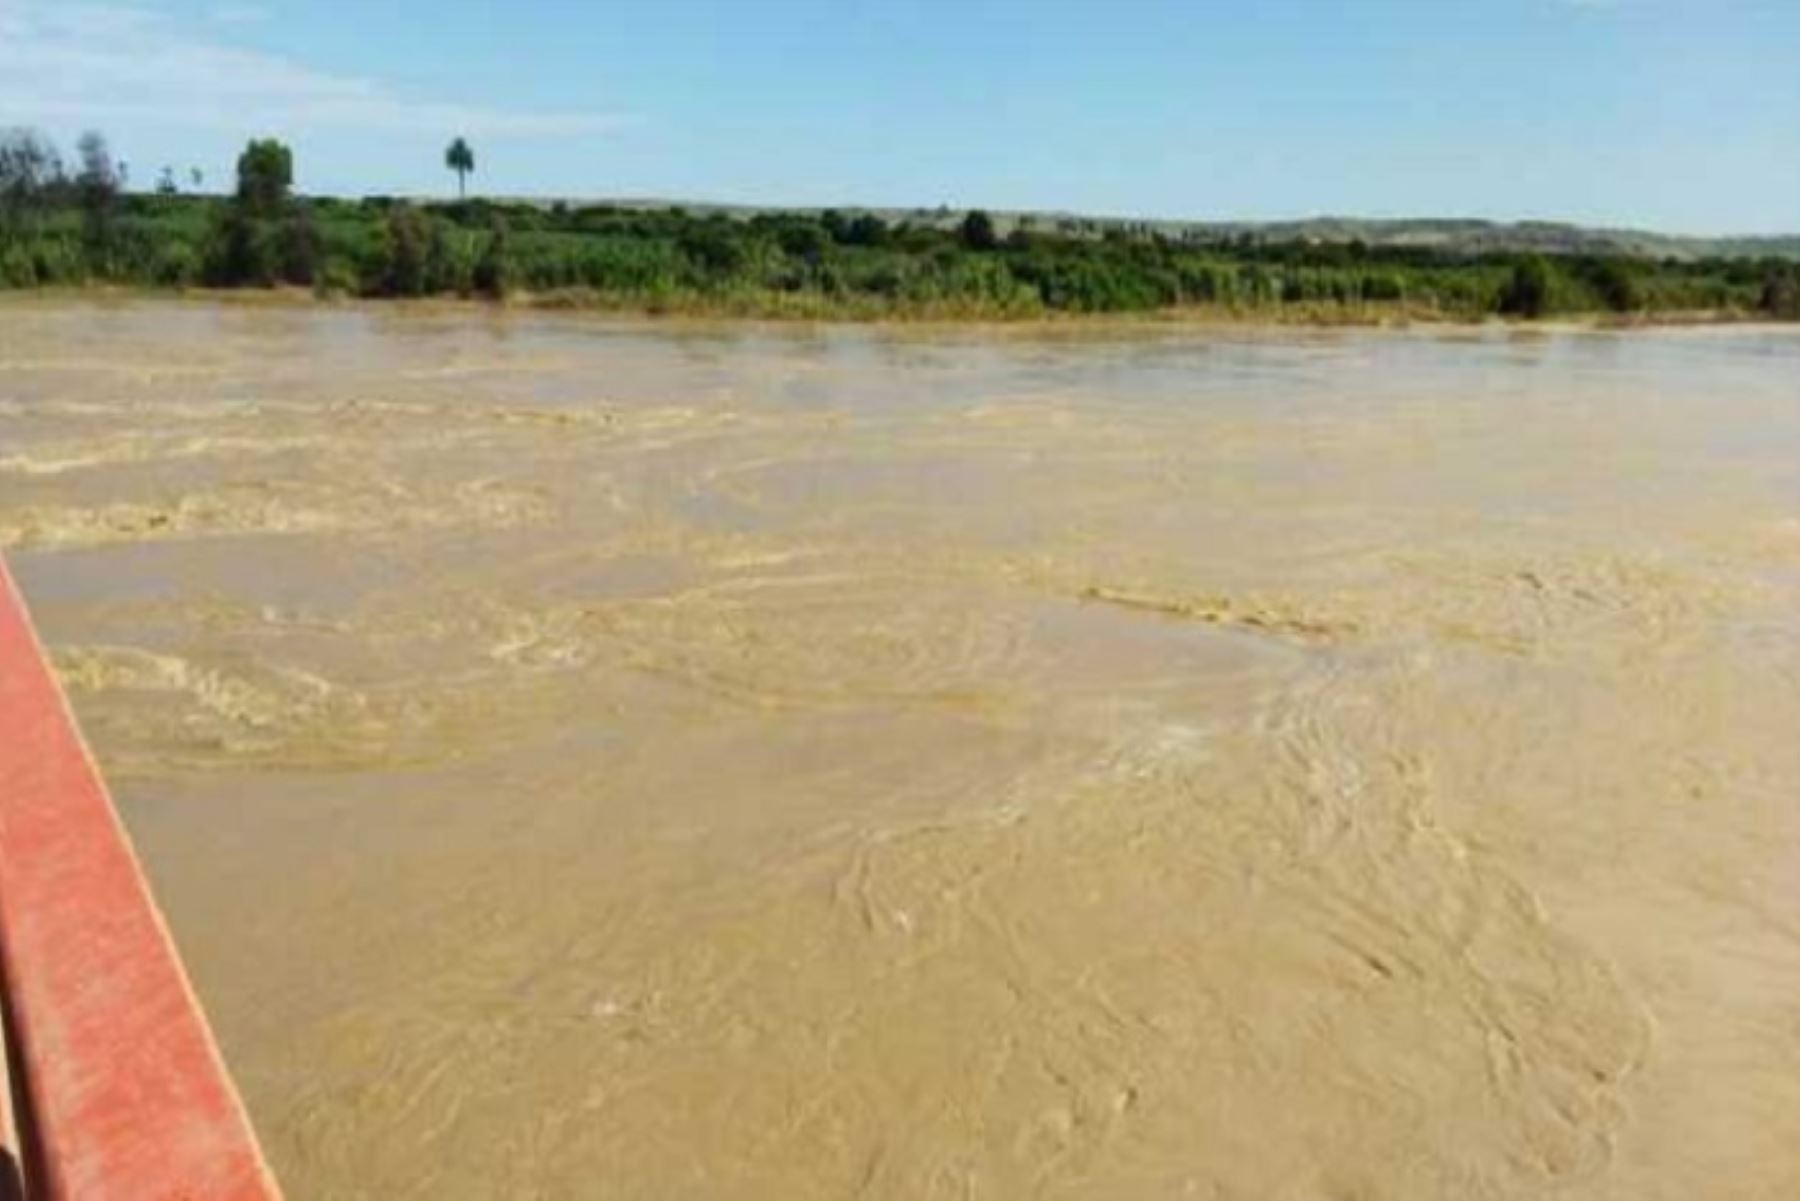 Persisten las precipitaciones pluviales en la zona norte del país, lo que contribuye al incremento de los volúmenes de reservorios.